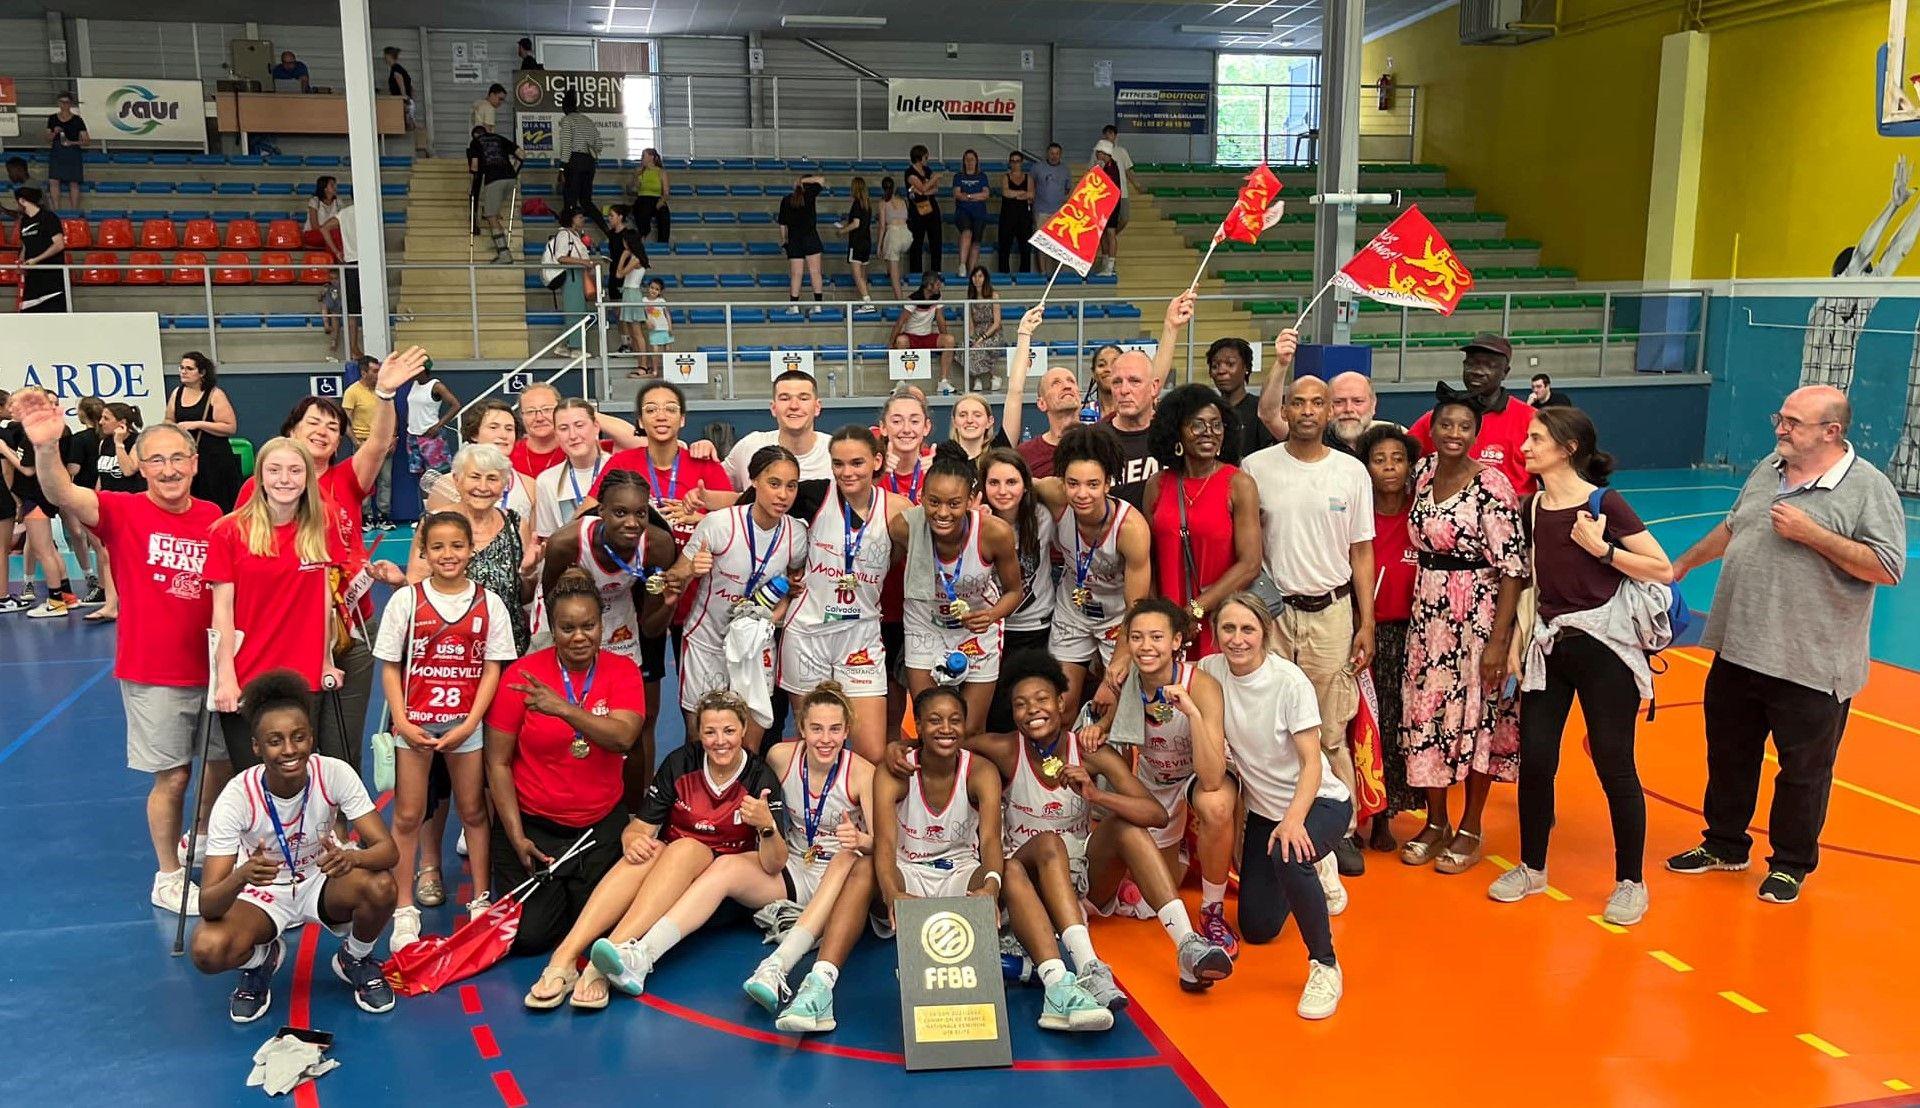 Mondeville champion de France U18, le Paris Basket 18 remporte le titre en U15